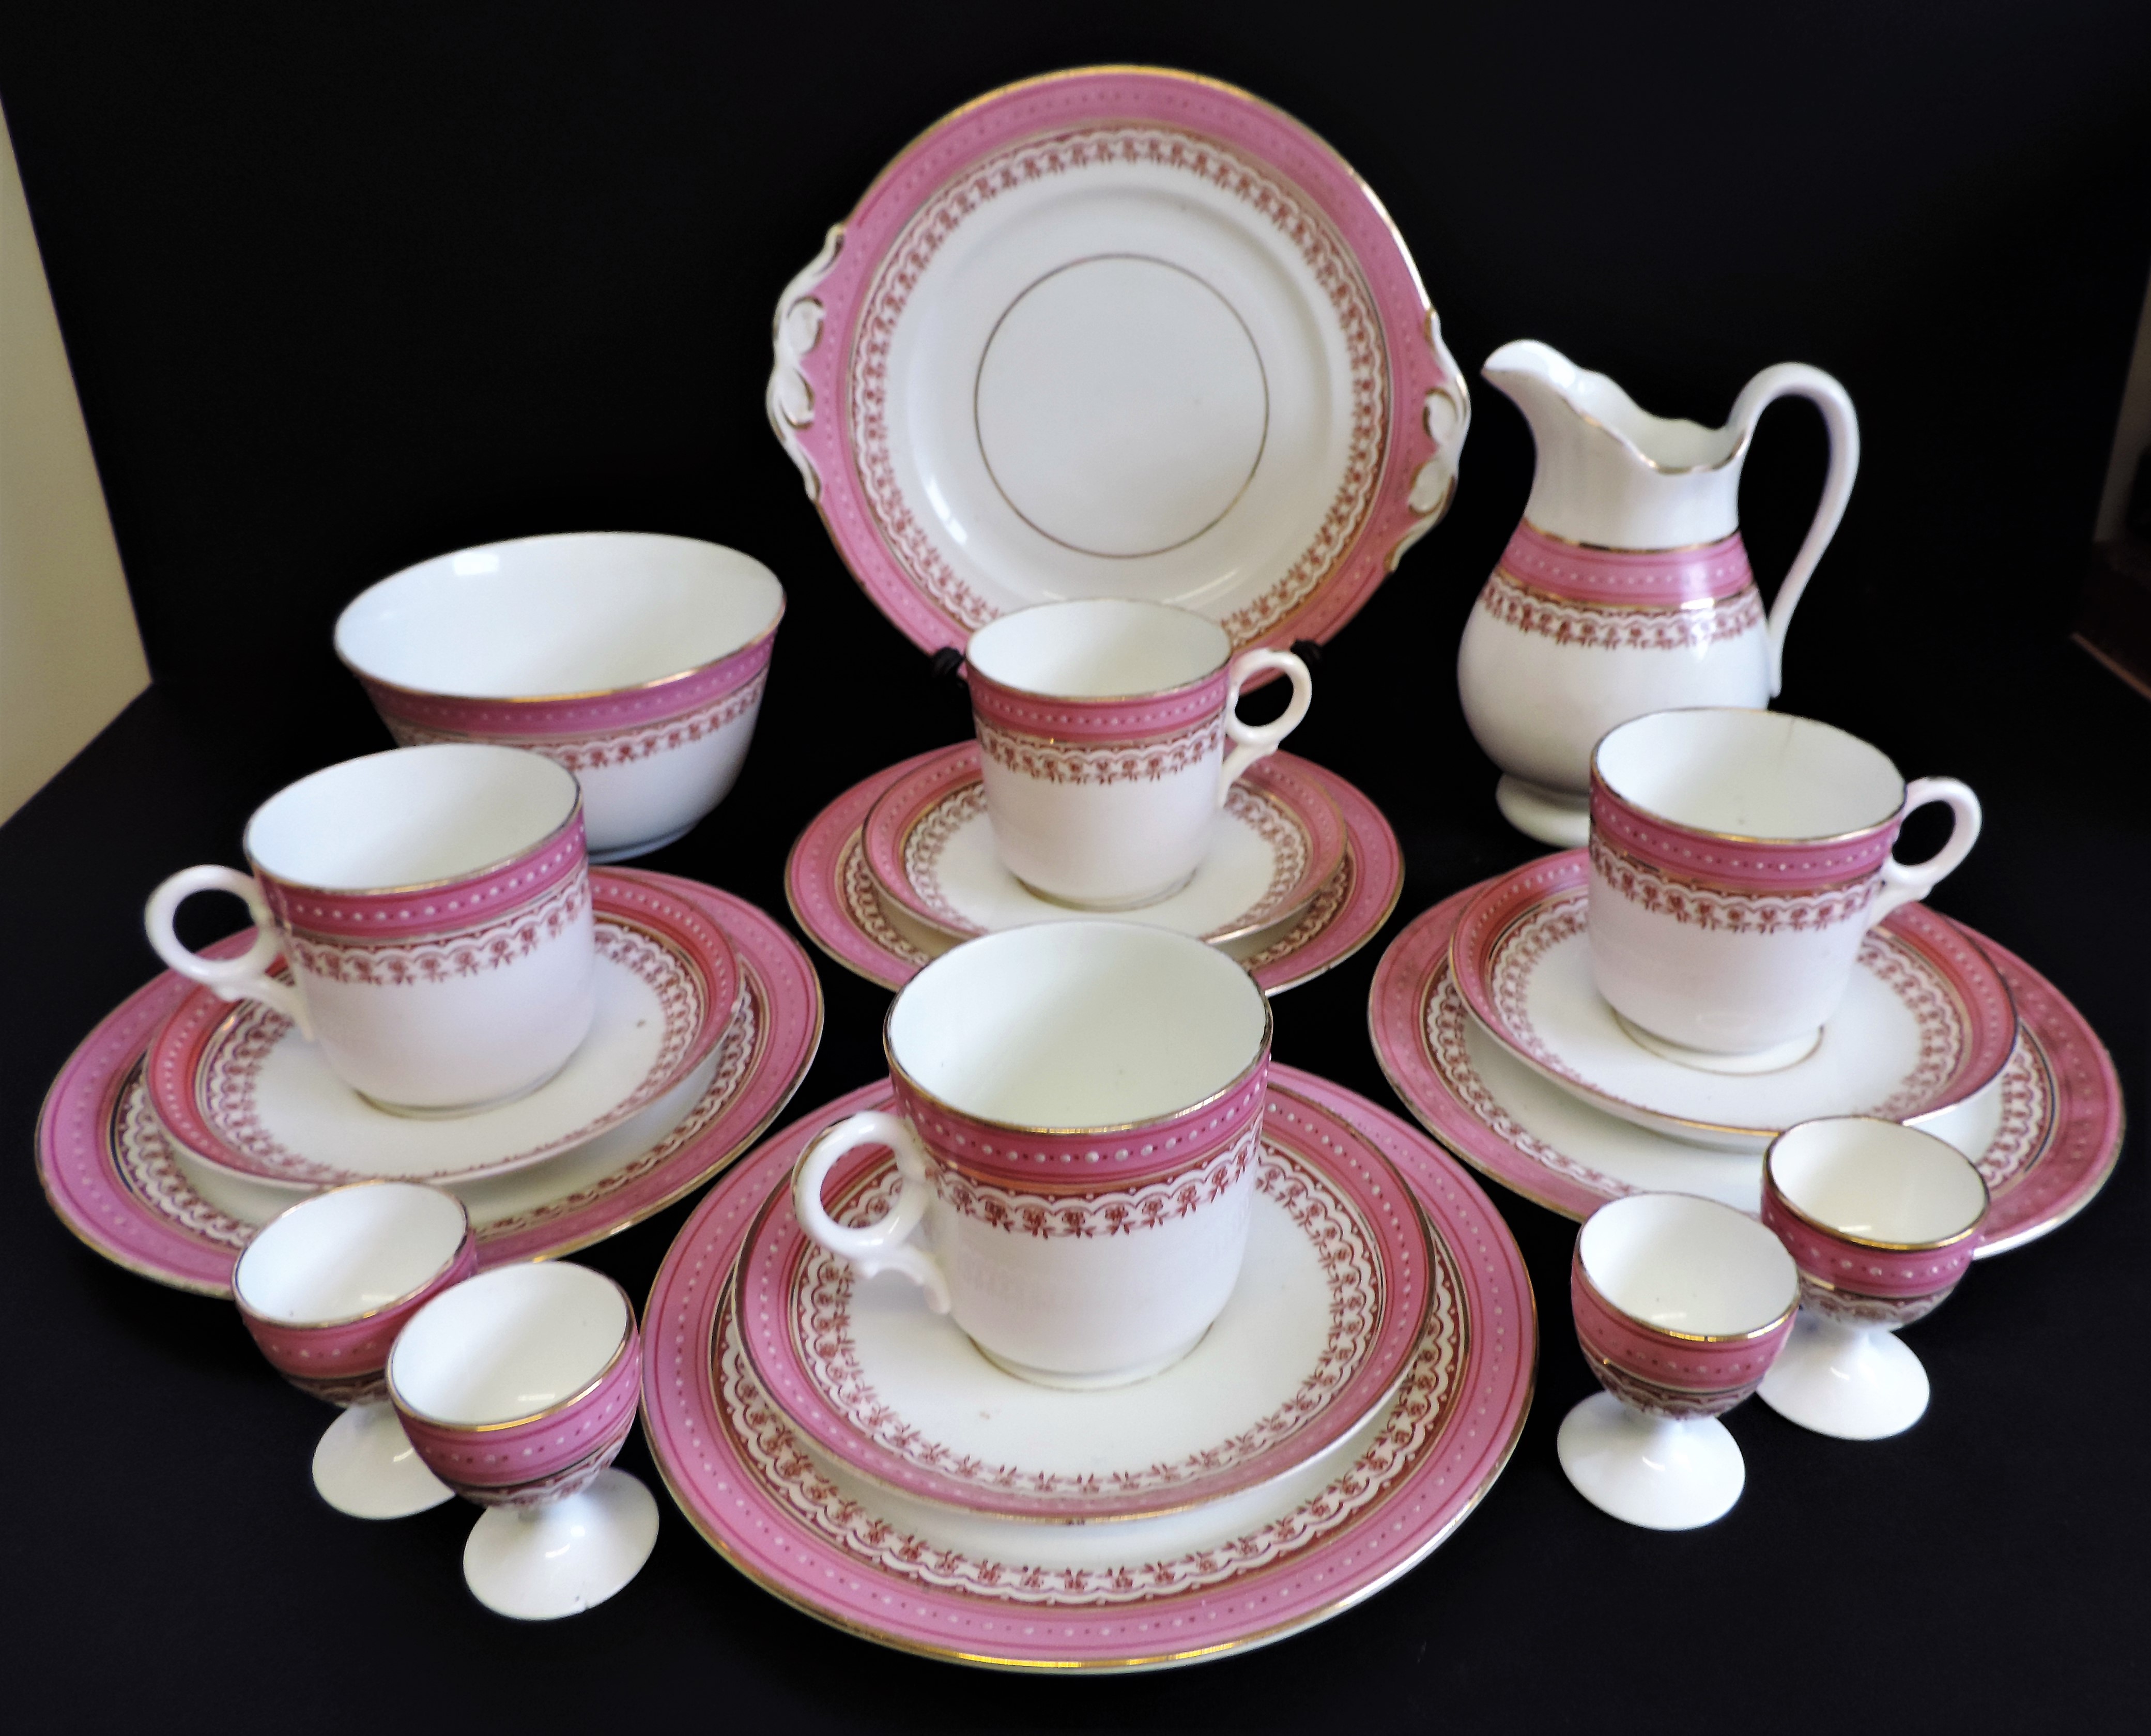 Vintage 19 piece Porcelain Breakfast/Tea Set for 4 People - Image 3 of 24